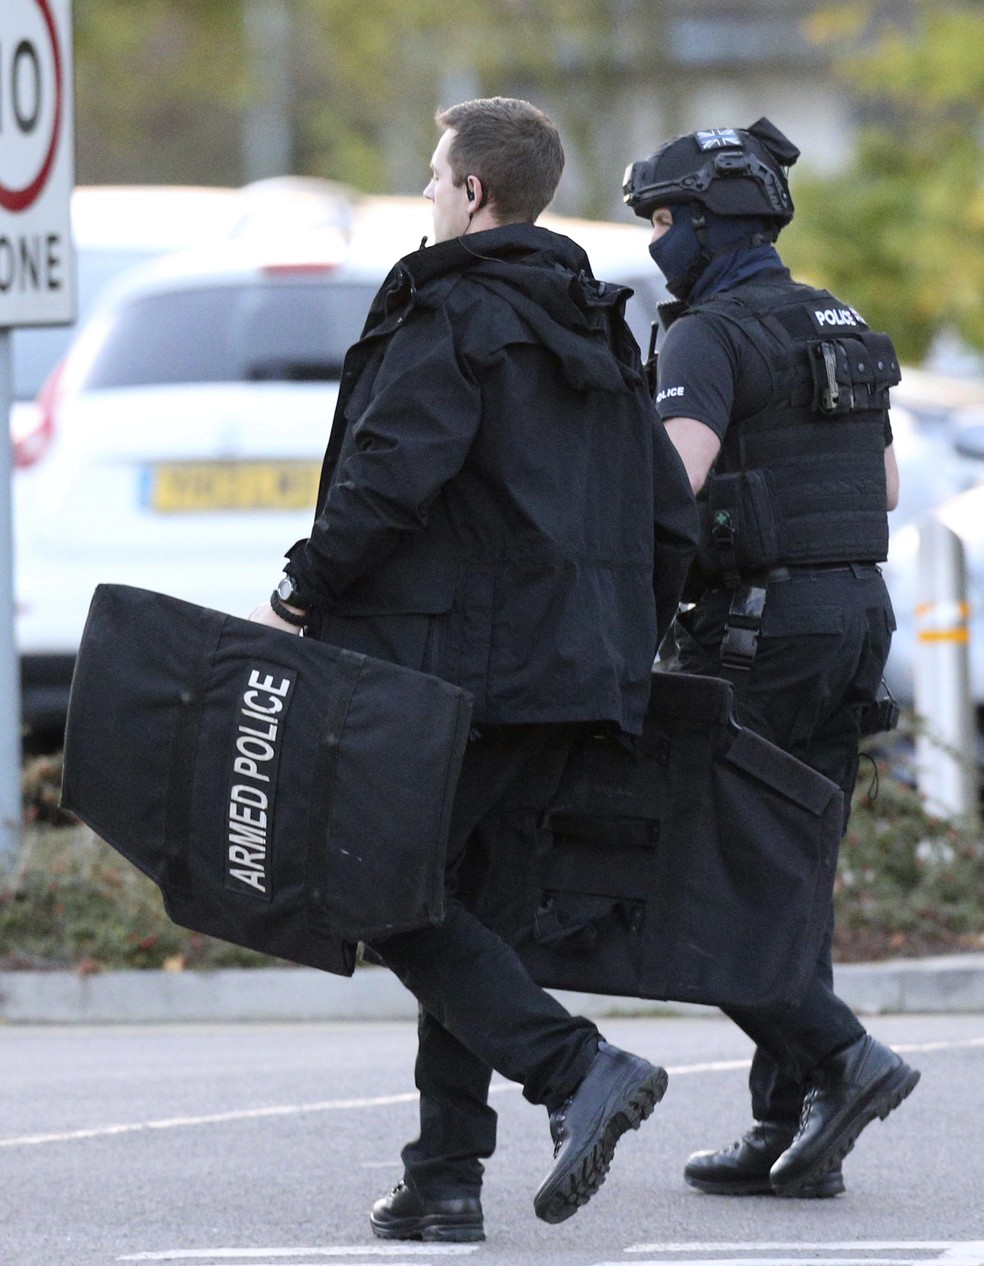 Polícia britânica disse que incidente não tem ligação com terrorismo (Foto: Aaron Chown/PA via AP)